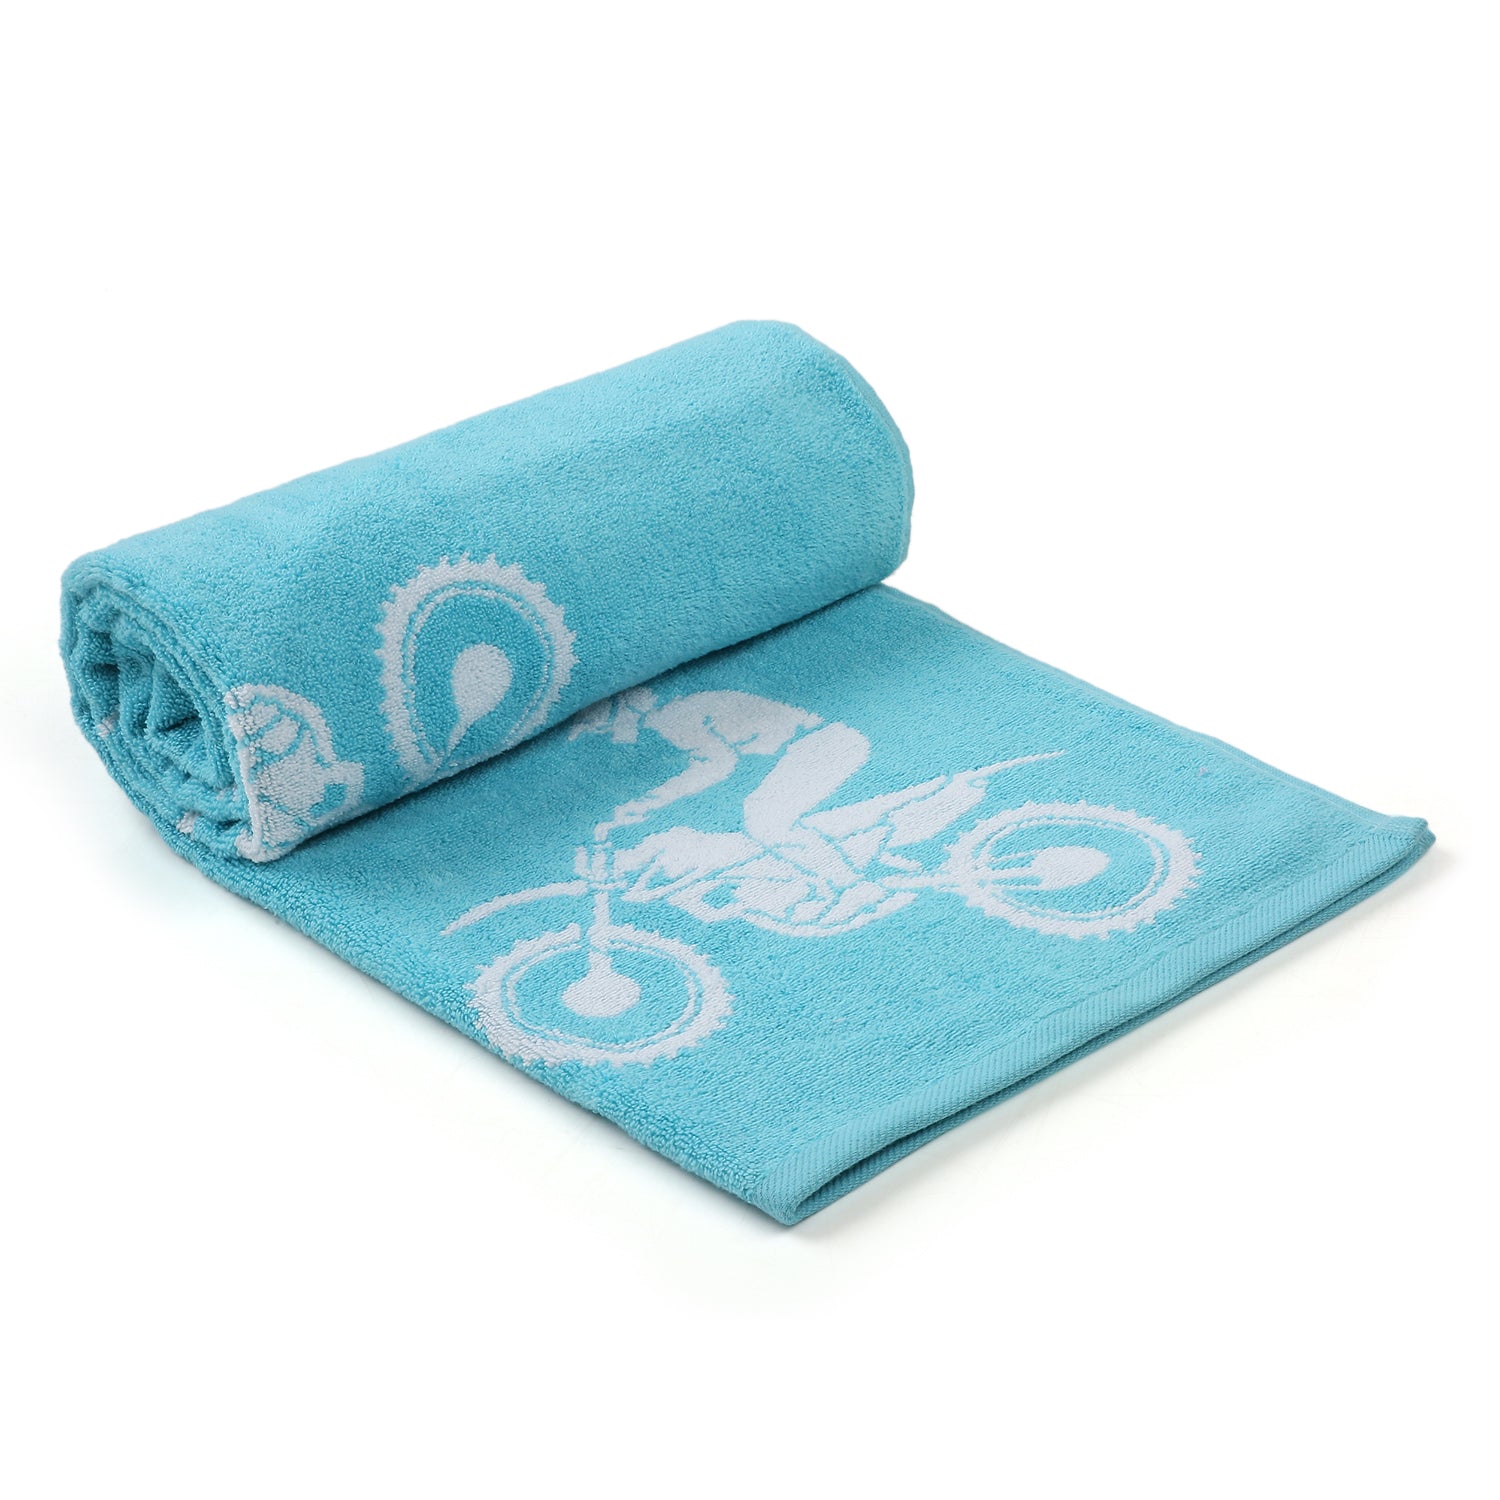 Biker Terry Towel